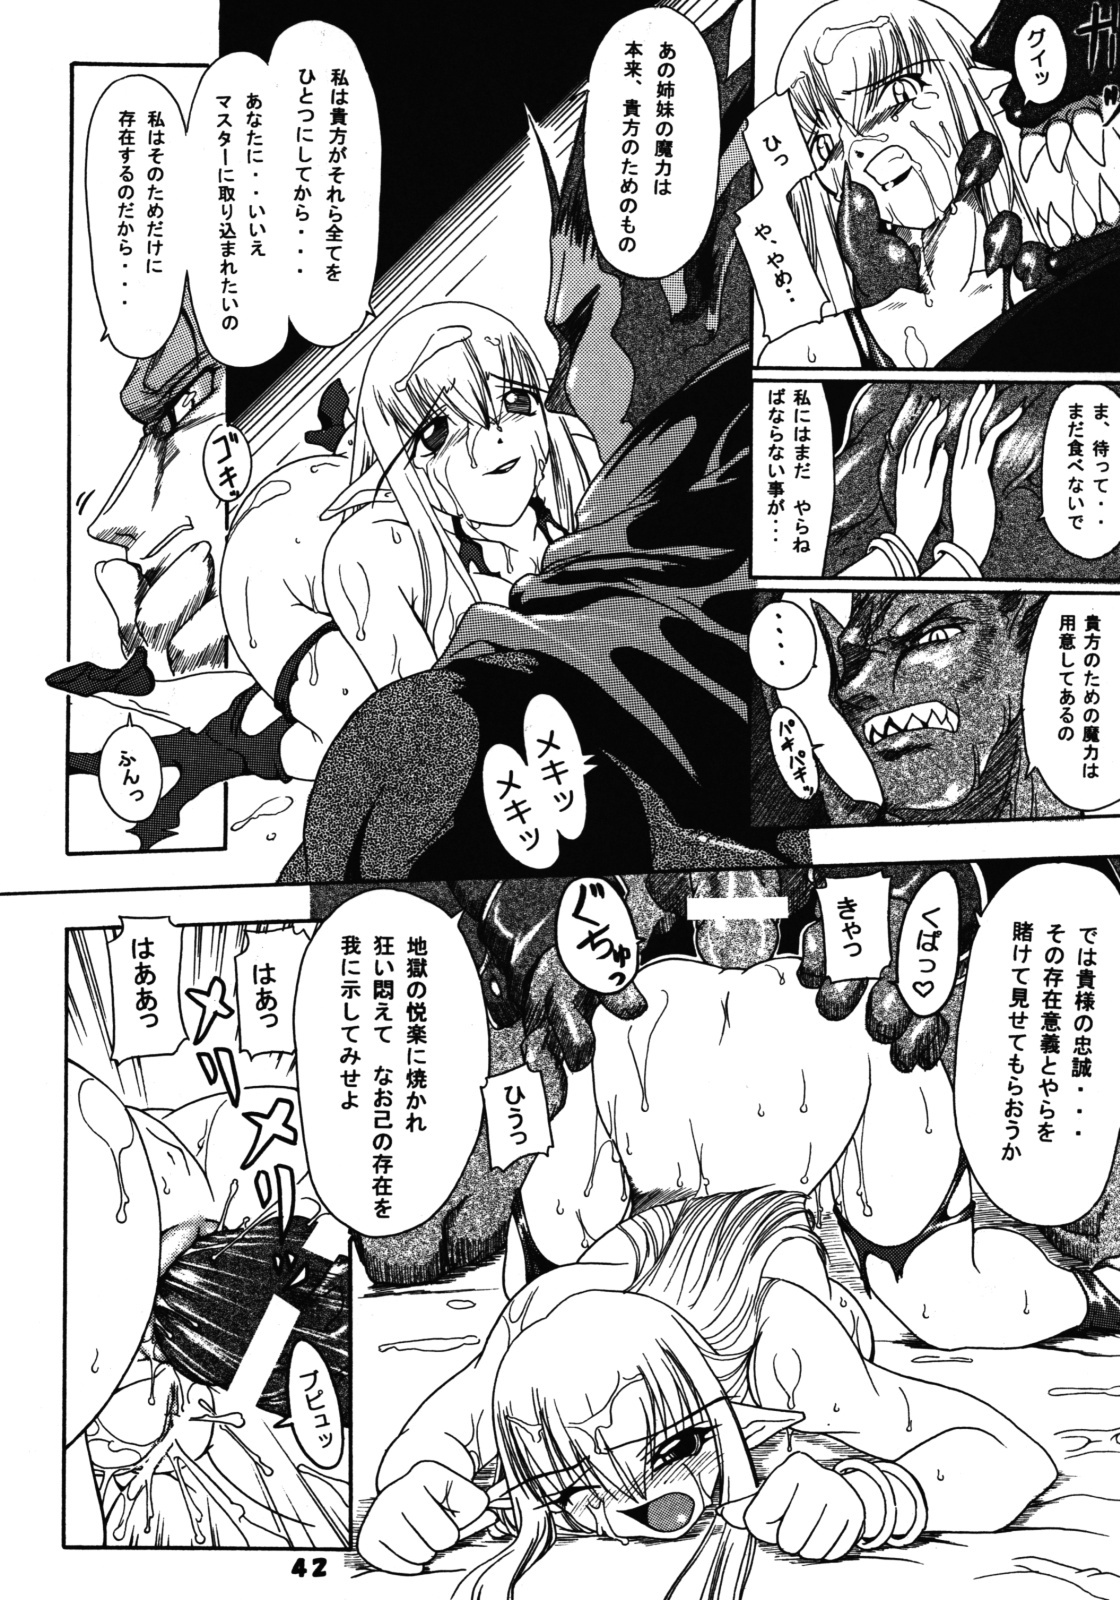 (SC24) [Furuya (Take)] Kakugee Zanmai 4 (Darkstalkers, SoulCalibur) page 41 full